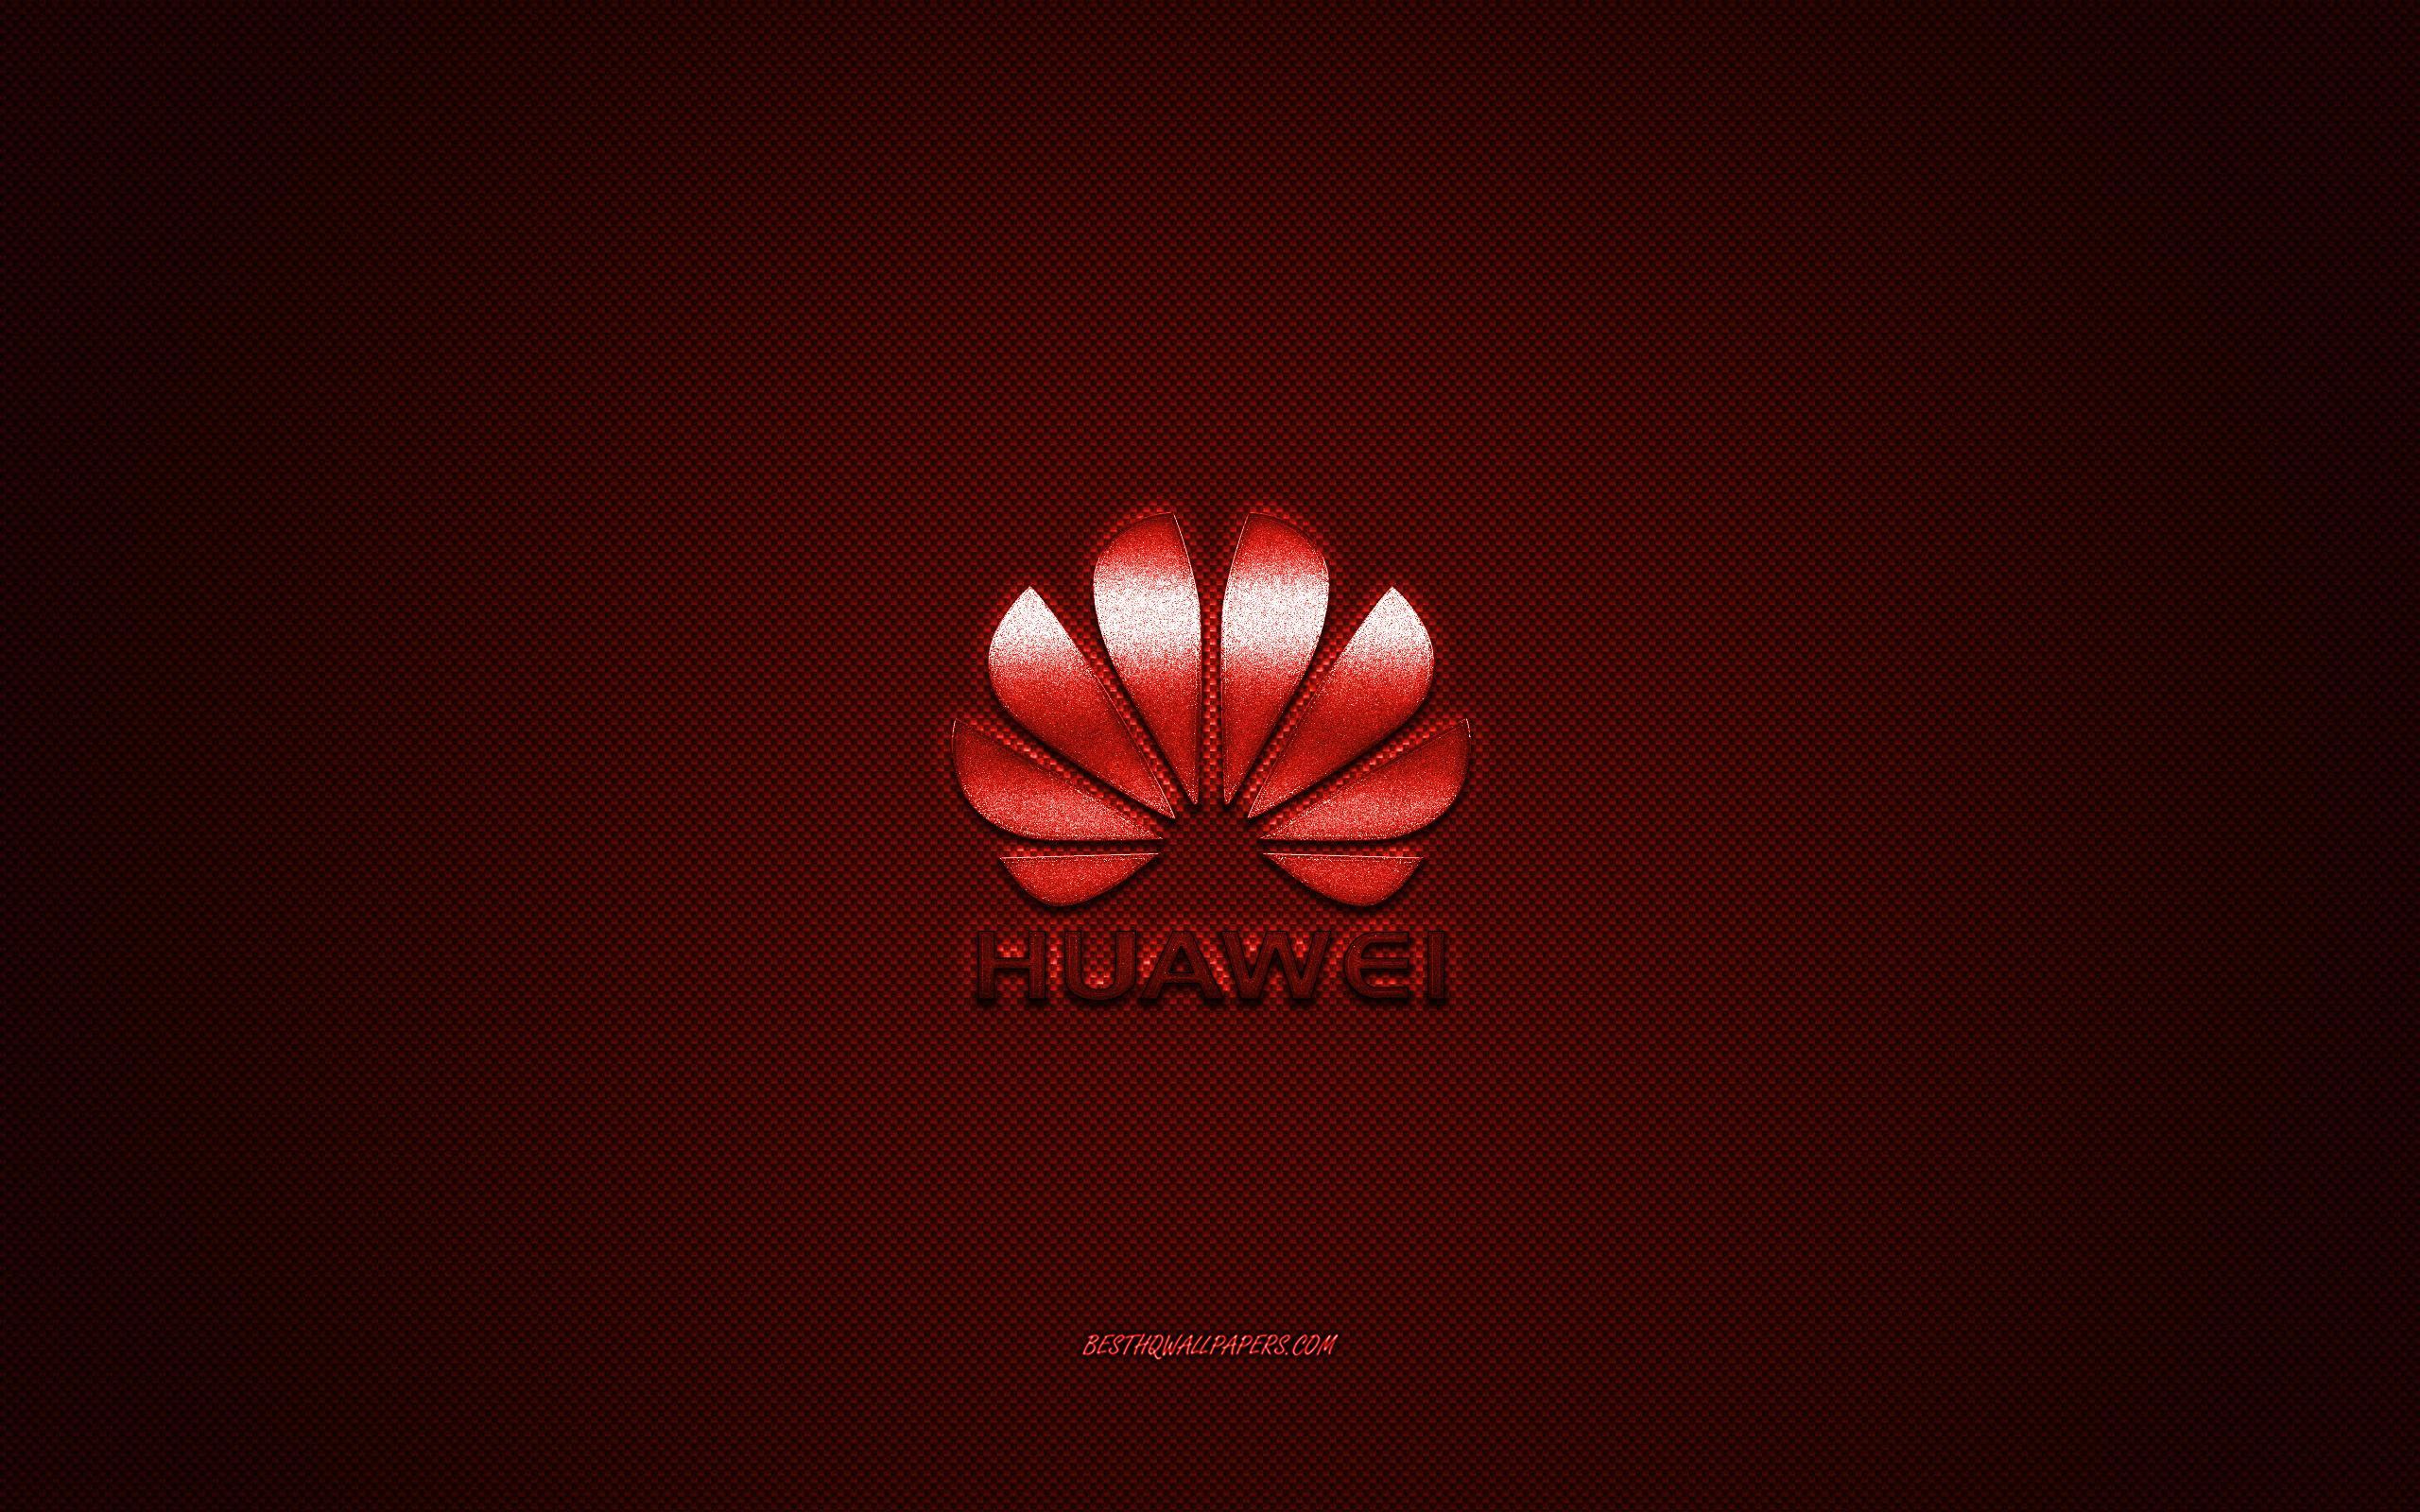 Download wallpaper Huawei logo, red shiny logo, Huawei metal emblem